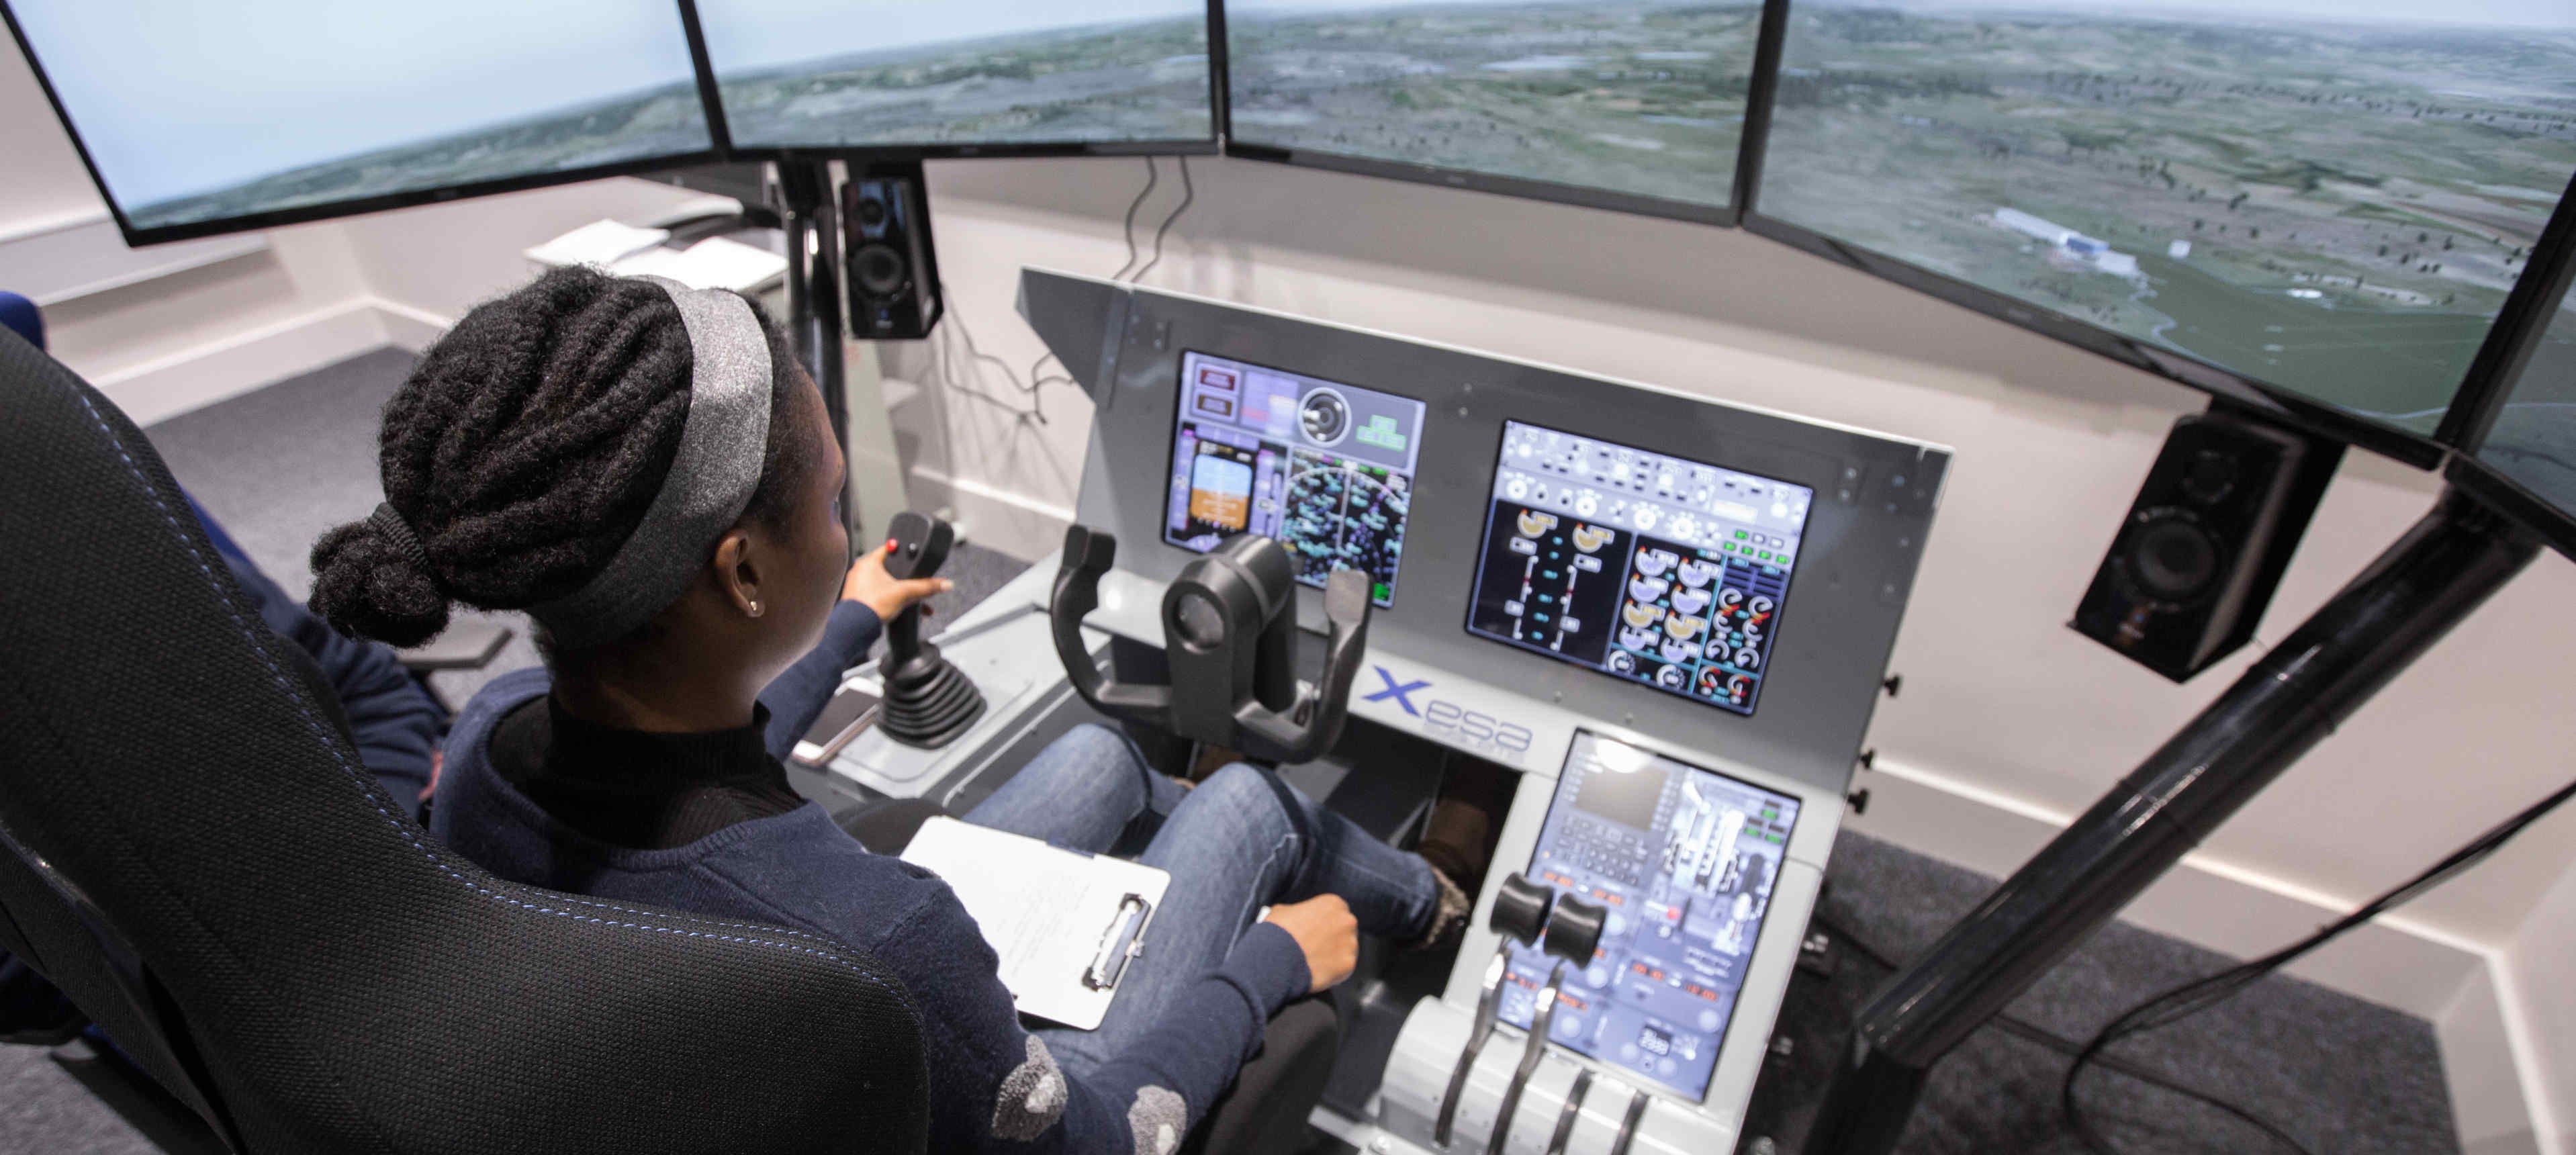 The Flight Simulator in the Department of Aeronautics